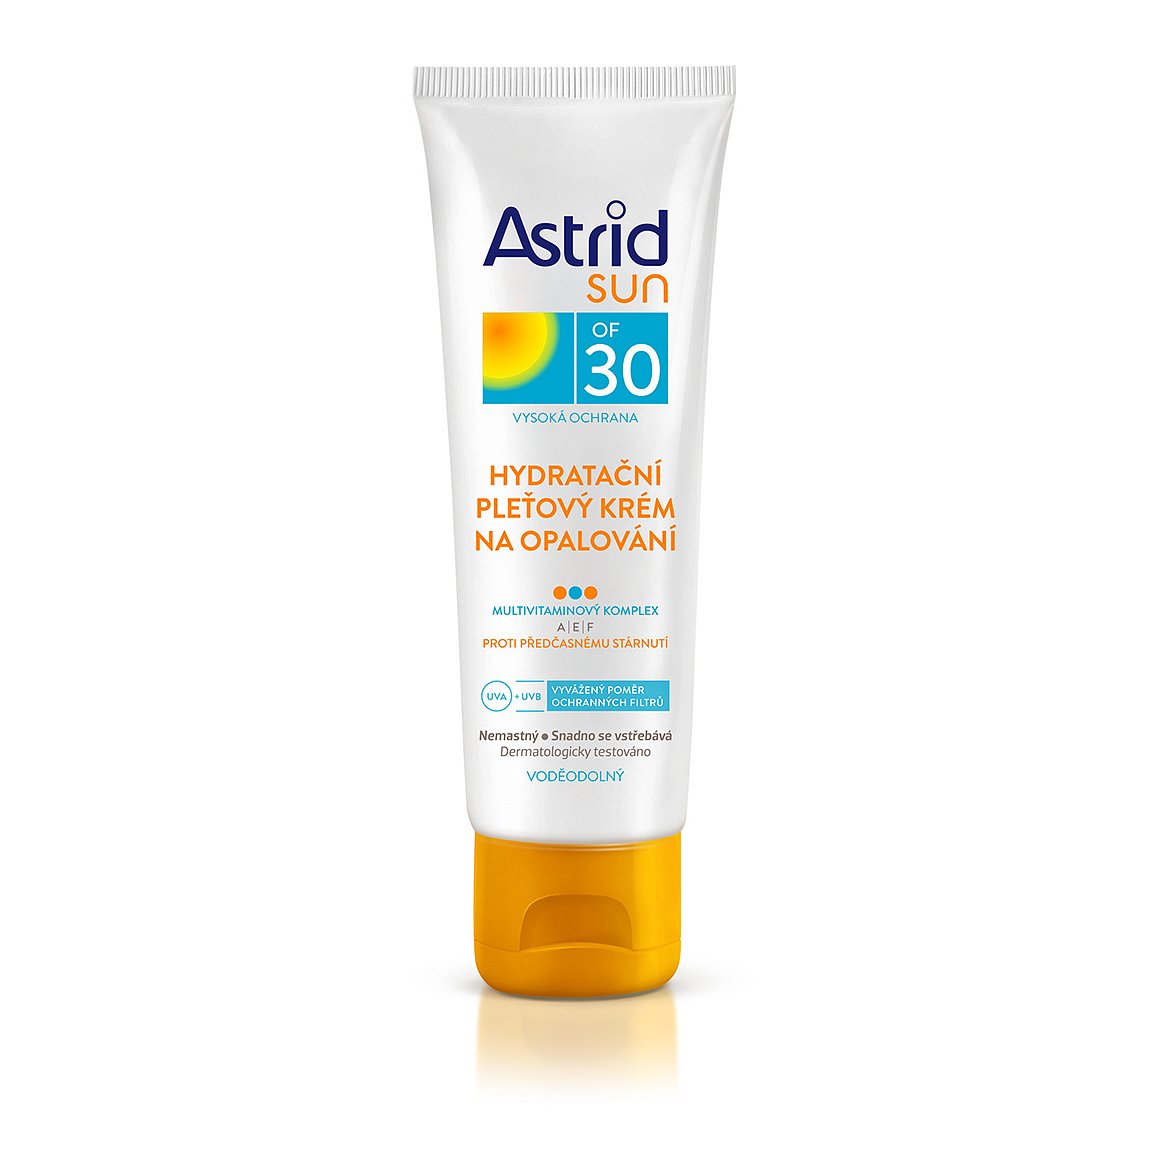 Astrid Sun hydratační pleťový krém na opalování OF 30 75 ml